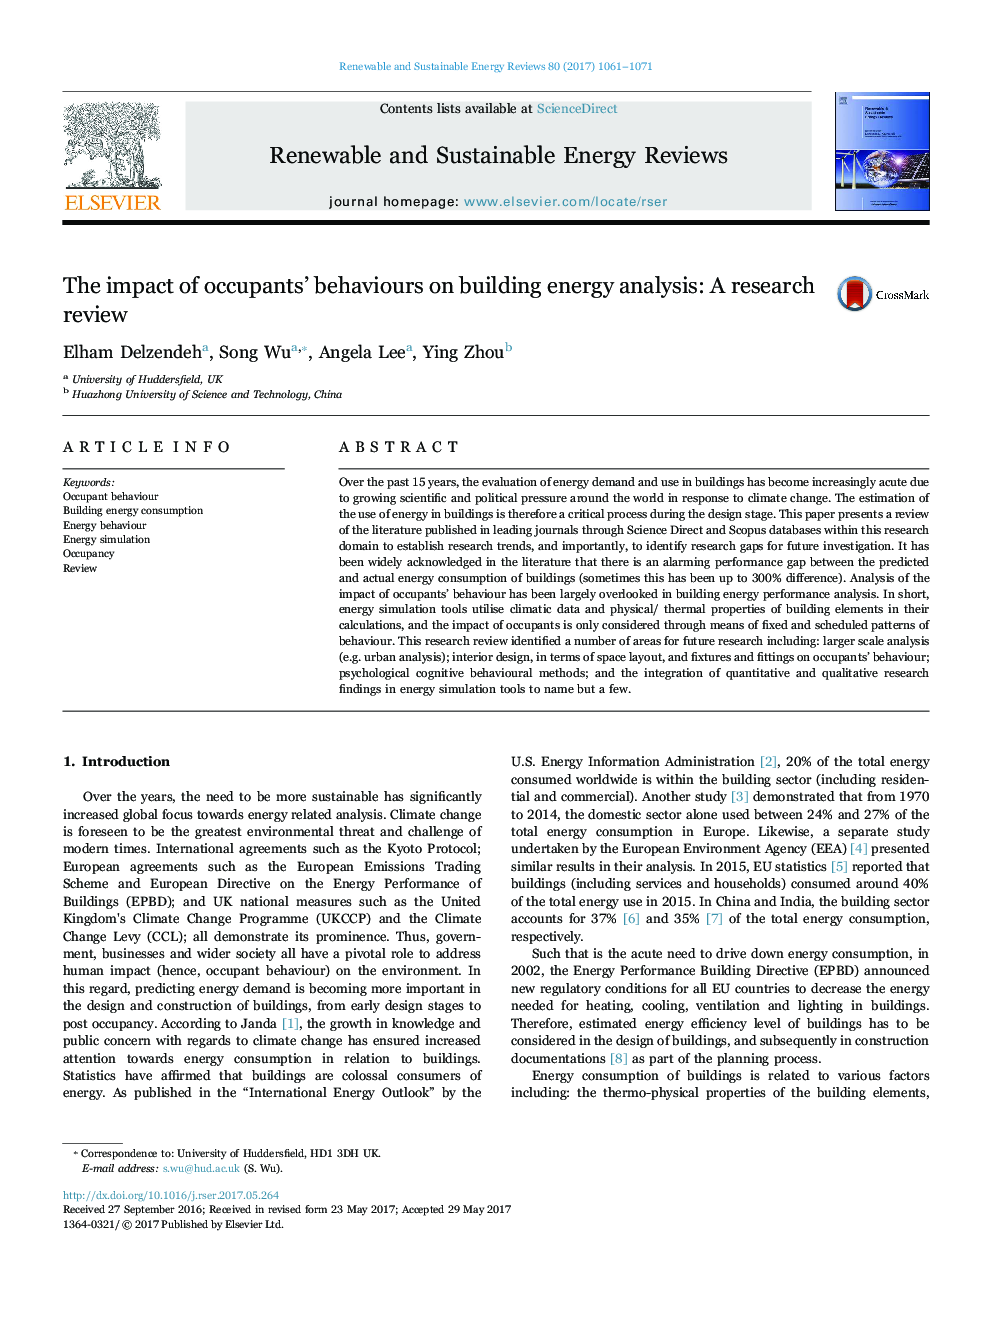 تأثیر رفتار ساکنان بر تحلیل انرژی ساختمان: بررسی تحقیقی 